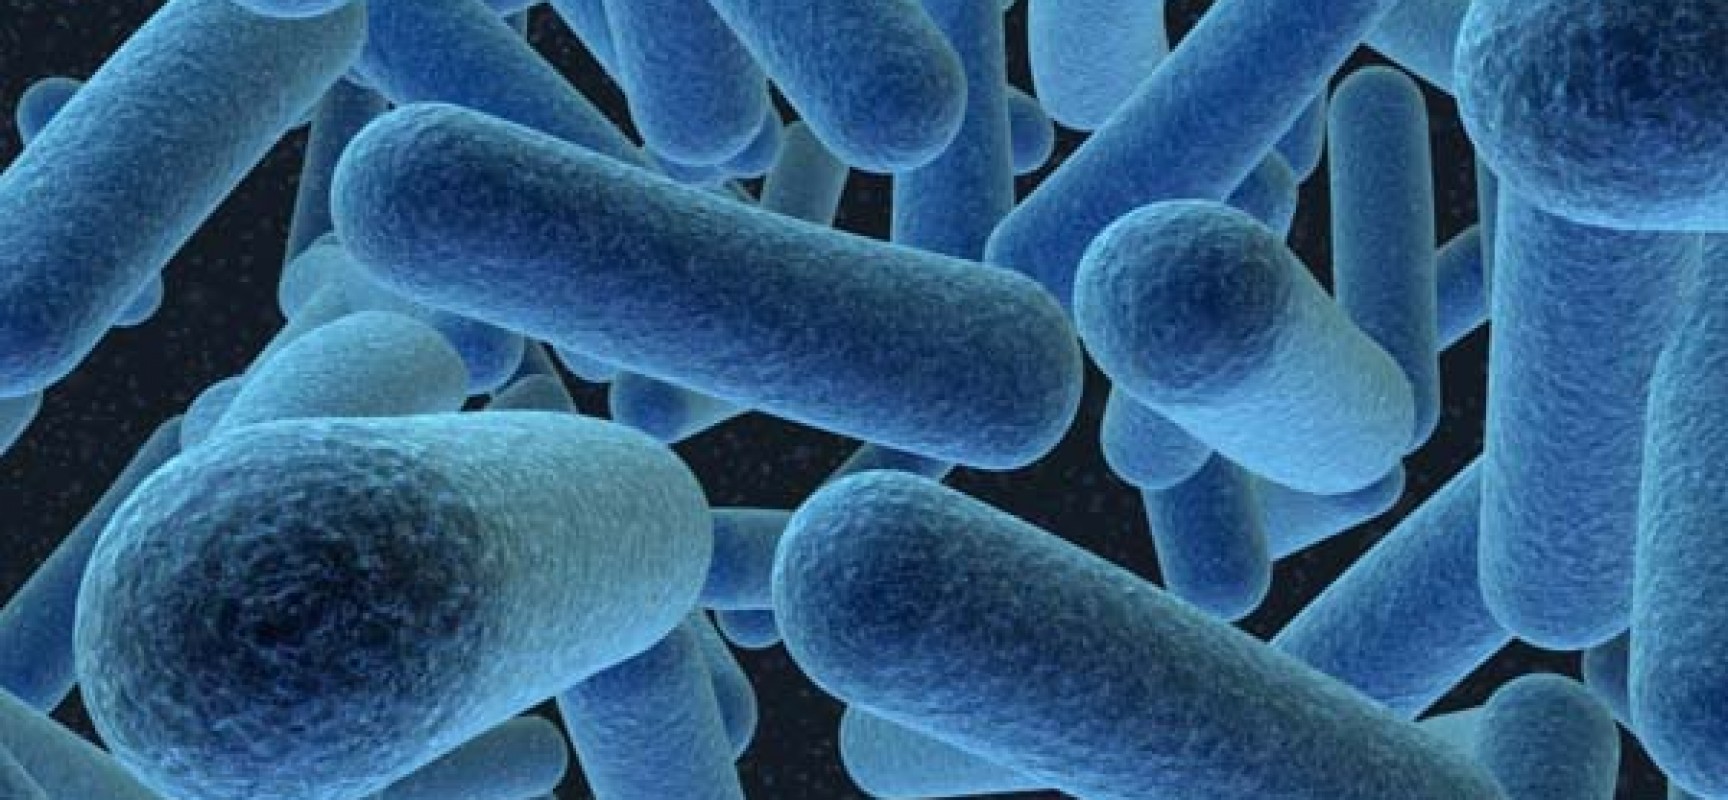 Εντερικά μικρόβια επηρεάζουν την σκλήρυνση κατά πλάκας